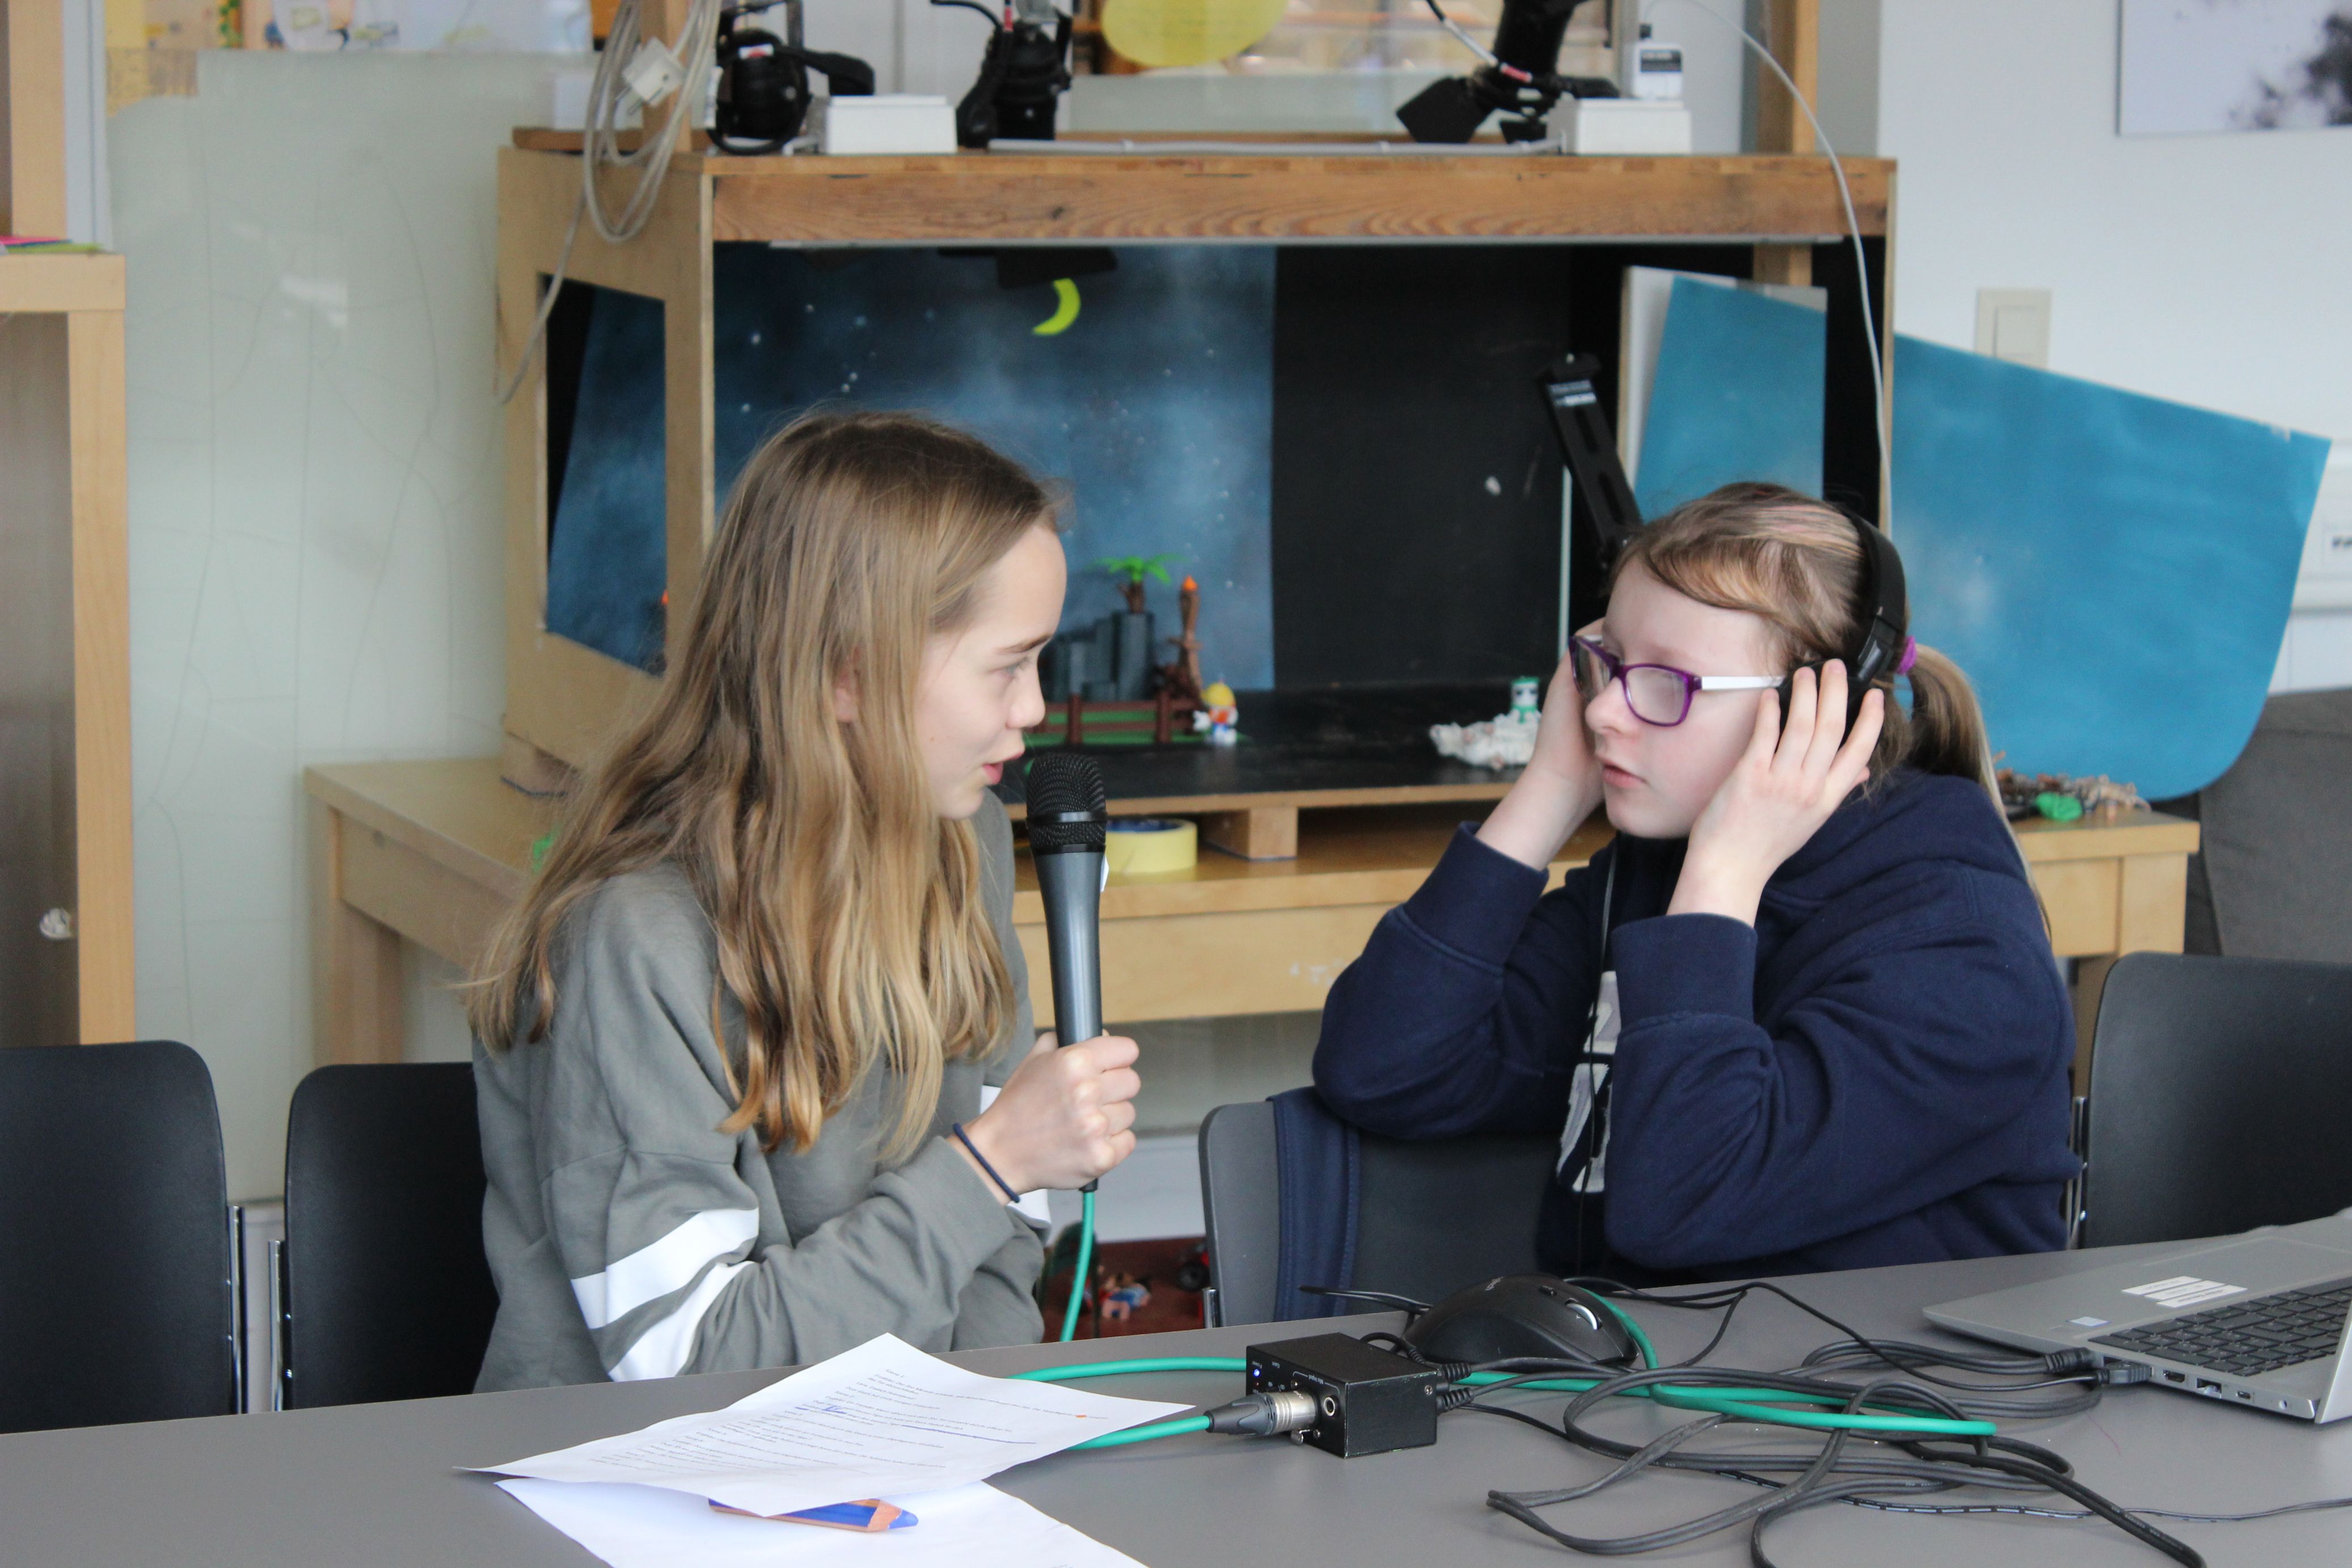 Zwei Schülerinnen hören sich mit Kopfhörern die Tonaufnahmen an